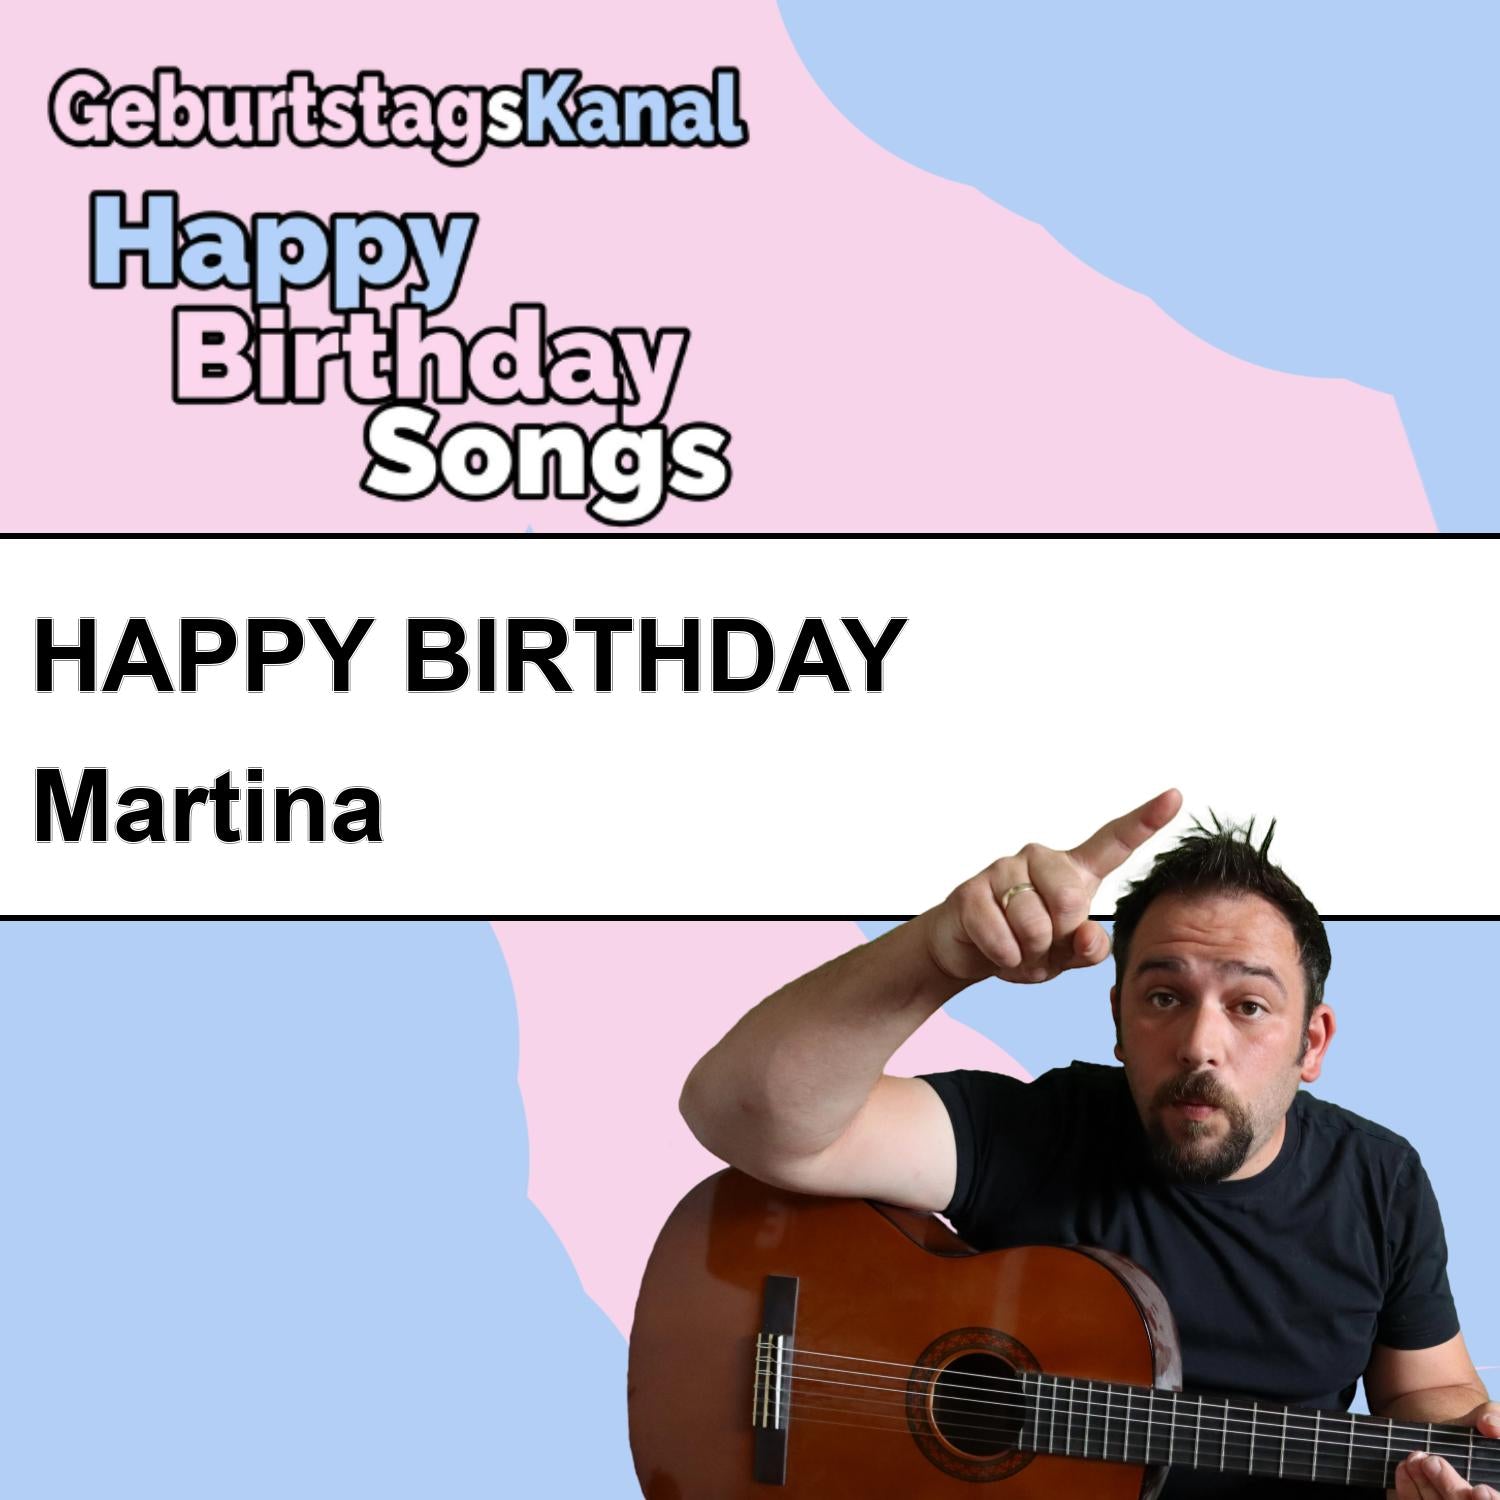 Produktbild Happy Birthday to you Martina mit Wunschgrußbotschaft